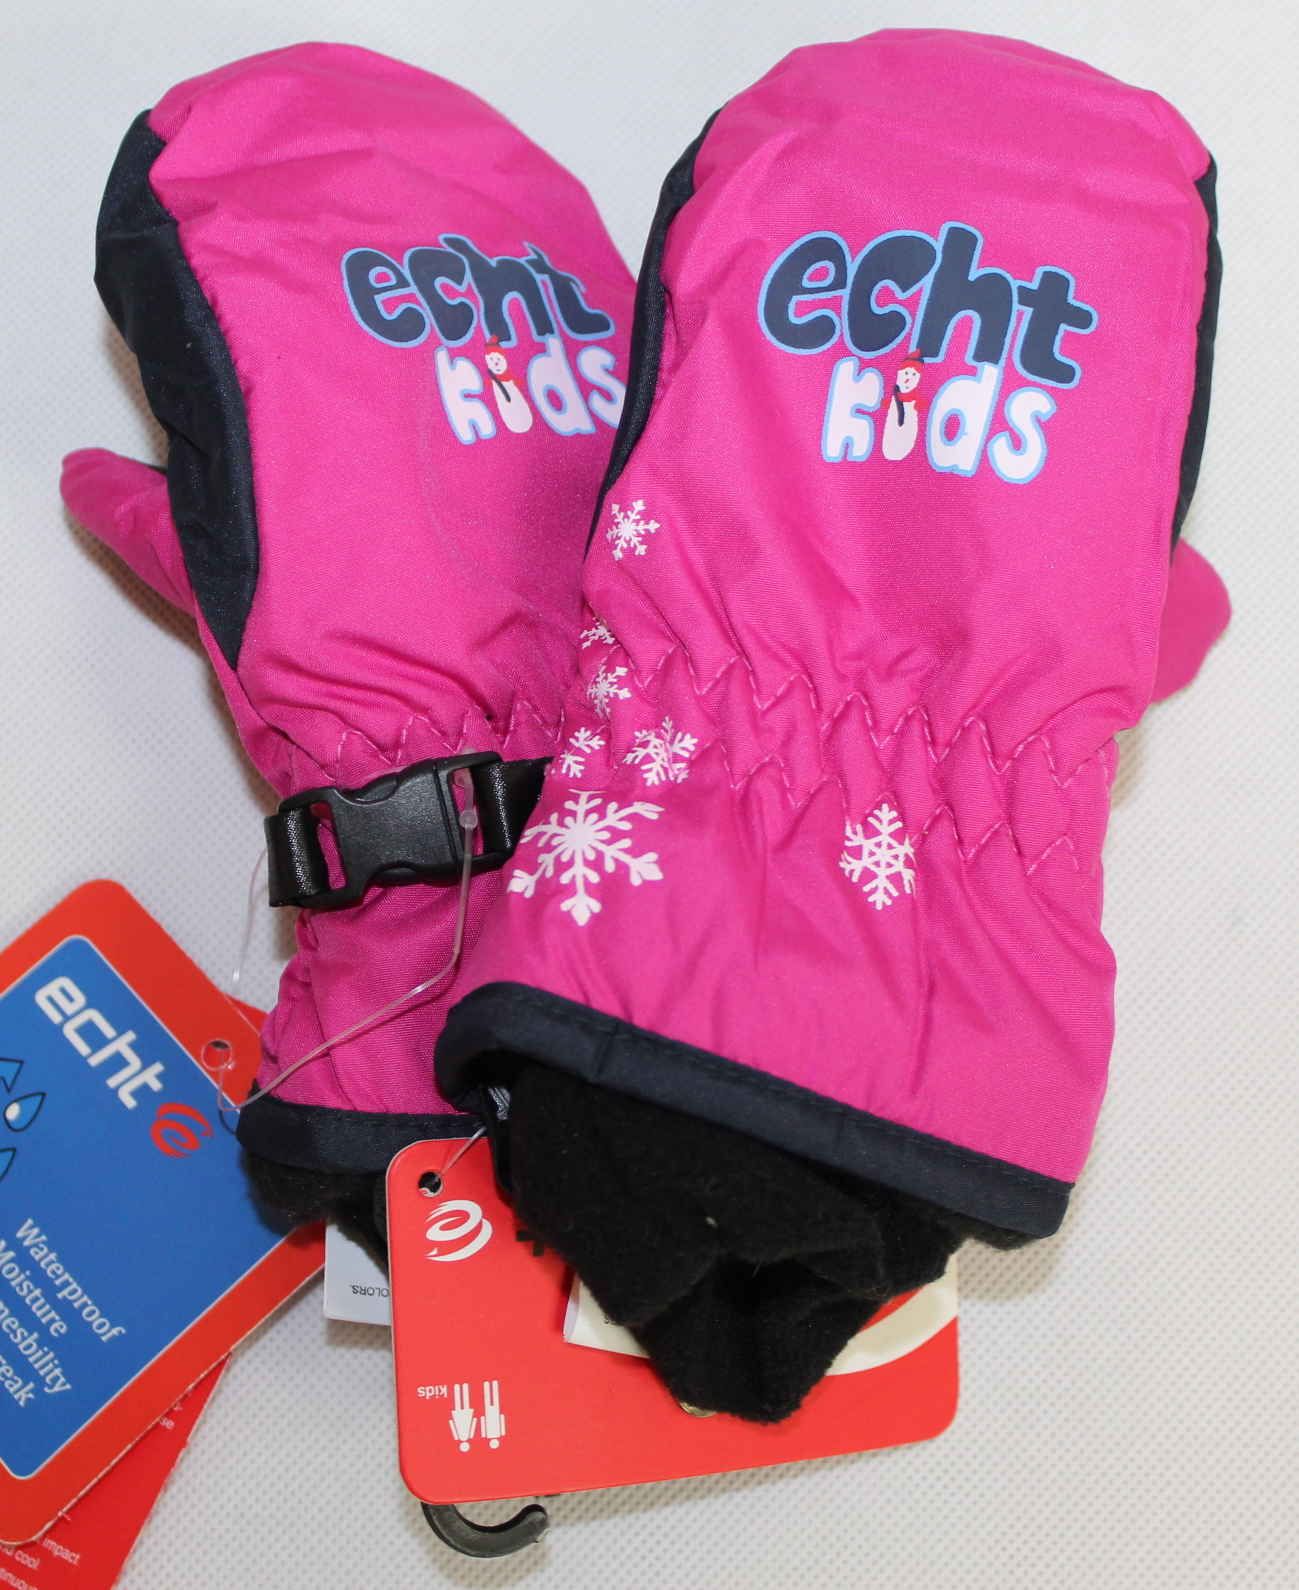 Dětské zimní palčáky, zimní rukavice, dětské rukavice, lyžařské palčáky, černé palčáky, růžové palčáky, dětské zimní rukavice, nepromokavé rukavice, dívčí palčáky Echt